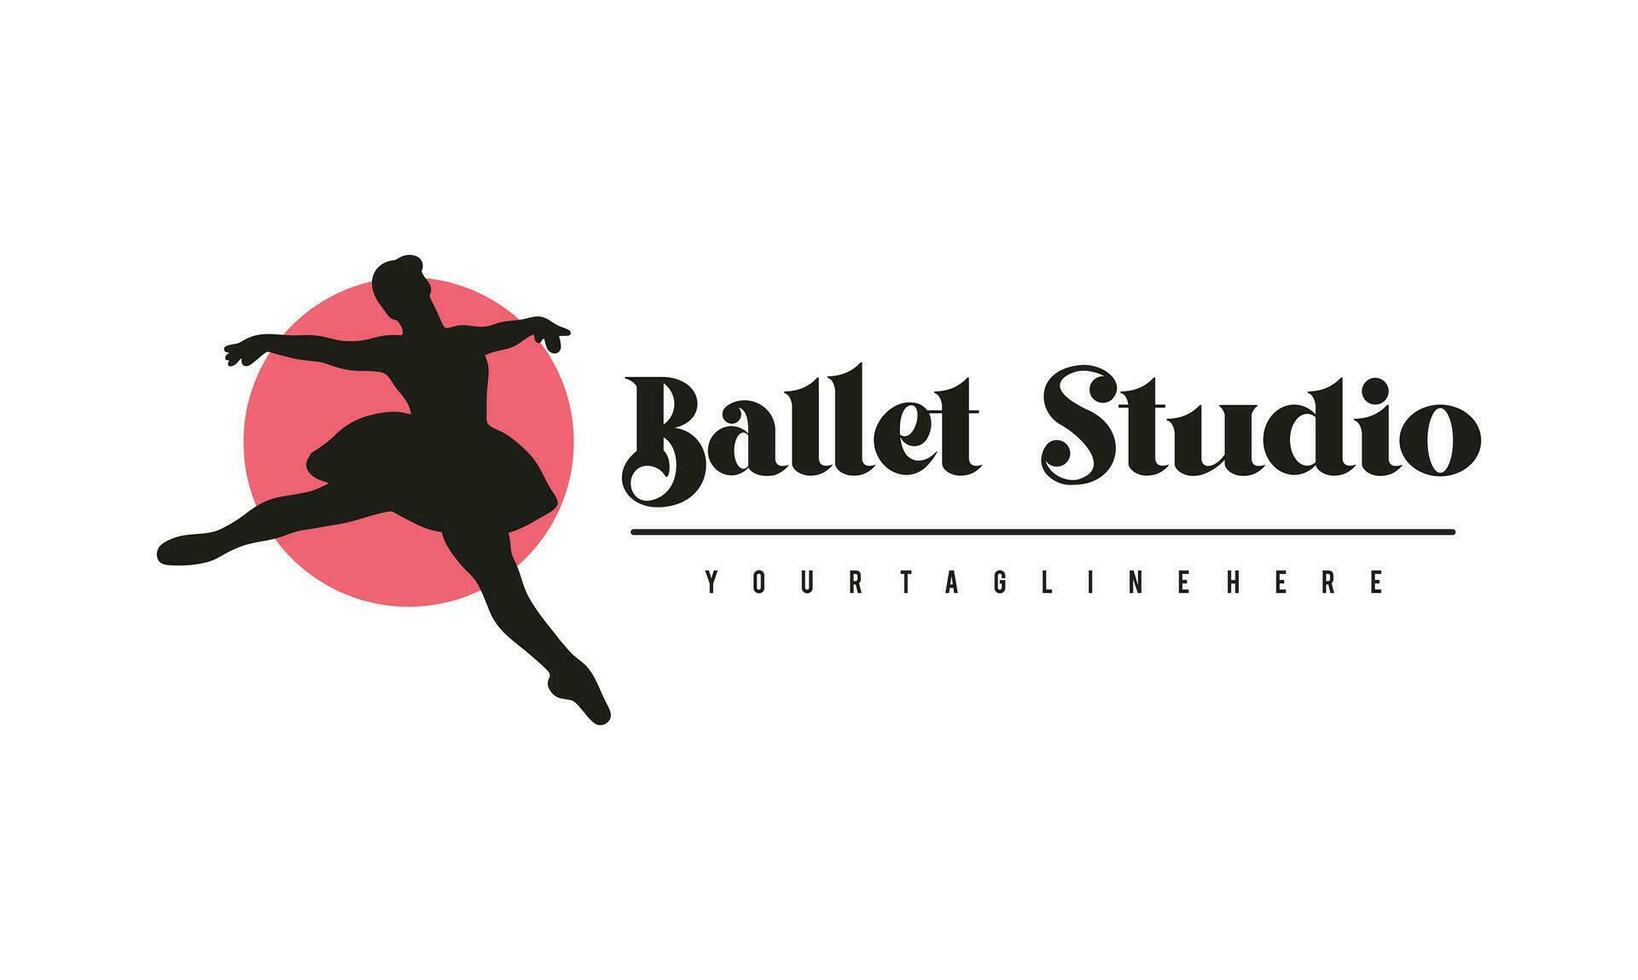 ballet logo modelo vector ilustración, bailarina logo diseño